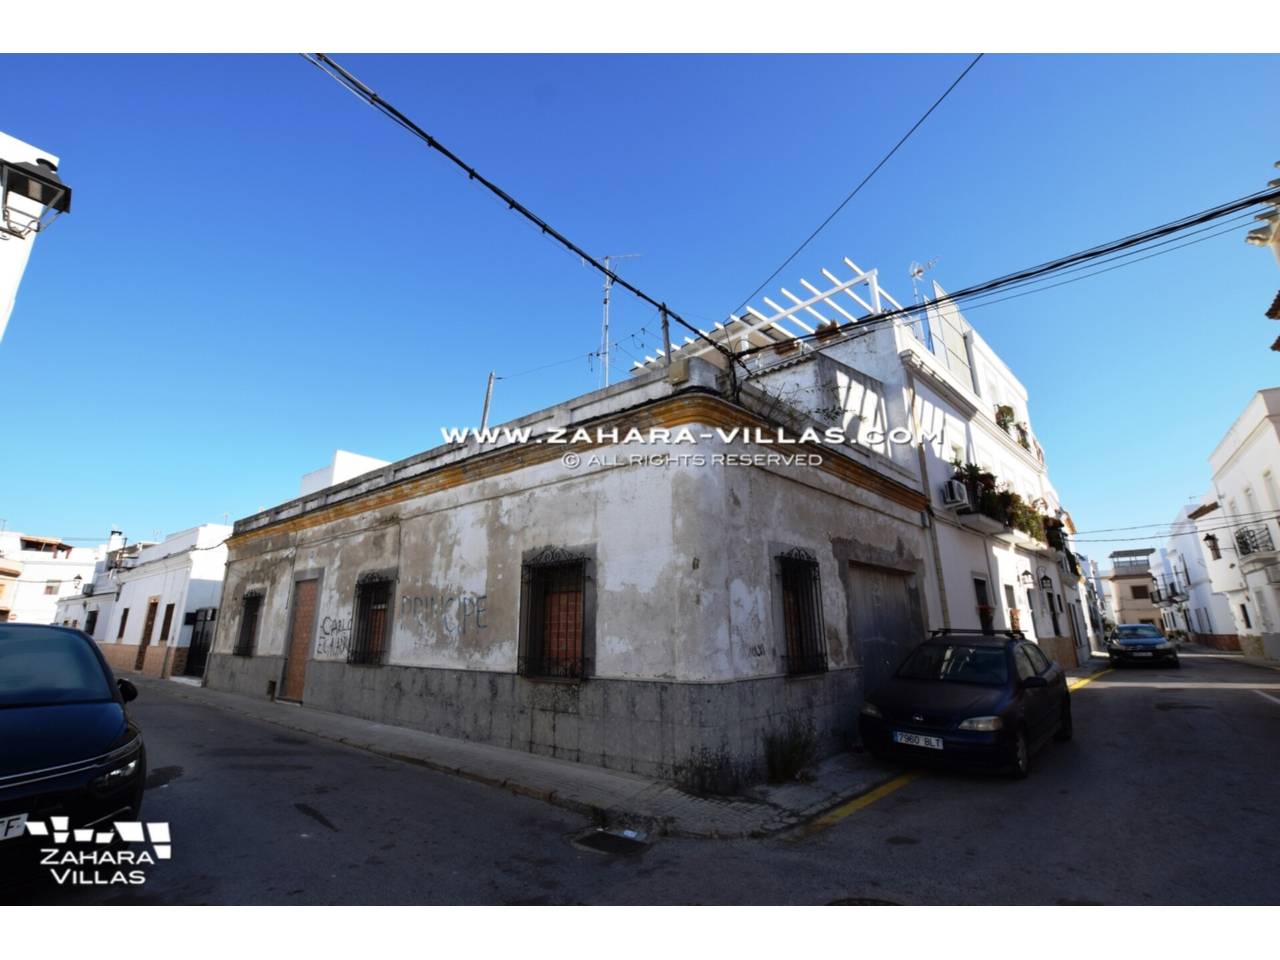 Imagen 2 de Gebäude zu verkaufen in Barbate, ganz in der Nähe des Strandes von Playa del Carmen